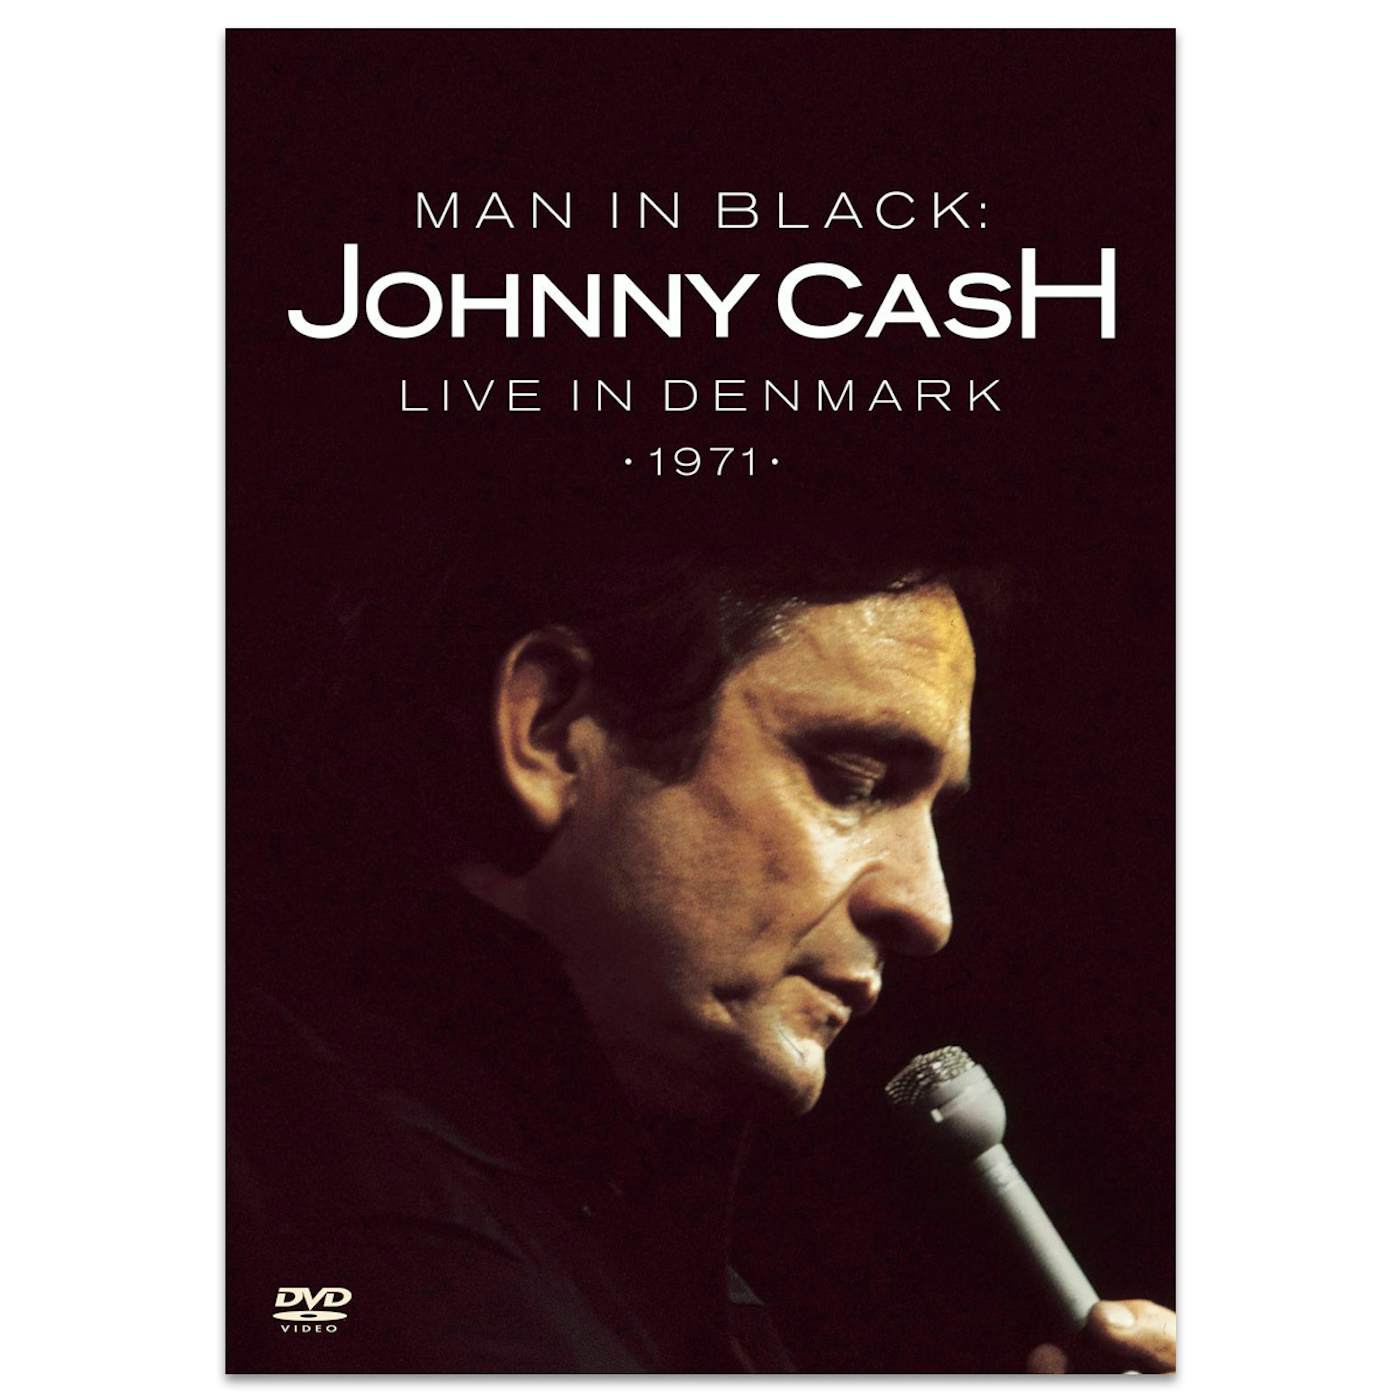 Johnny Cash Man In Black: Live In Denmark DVD